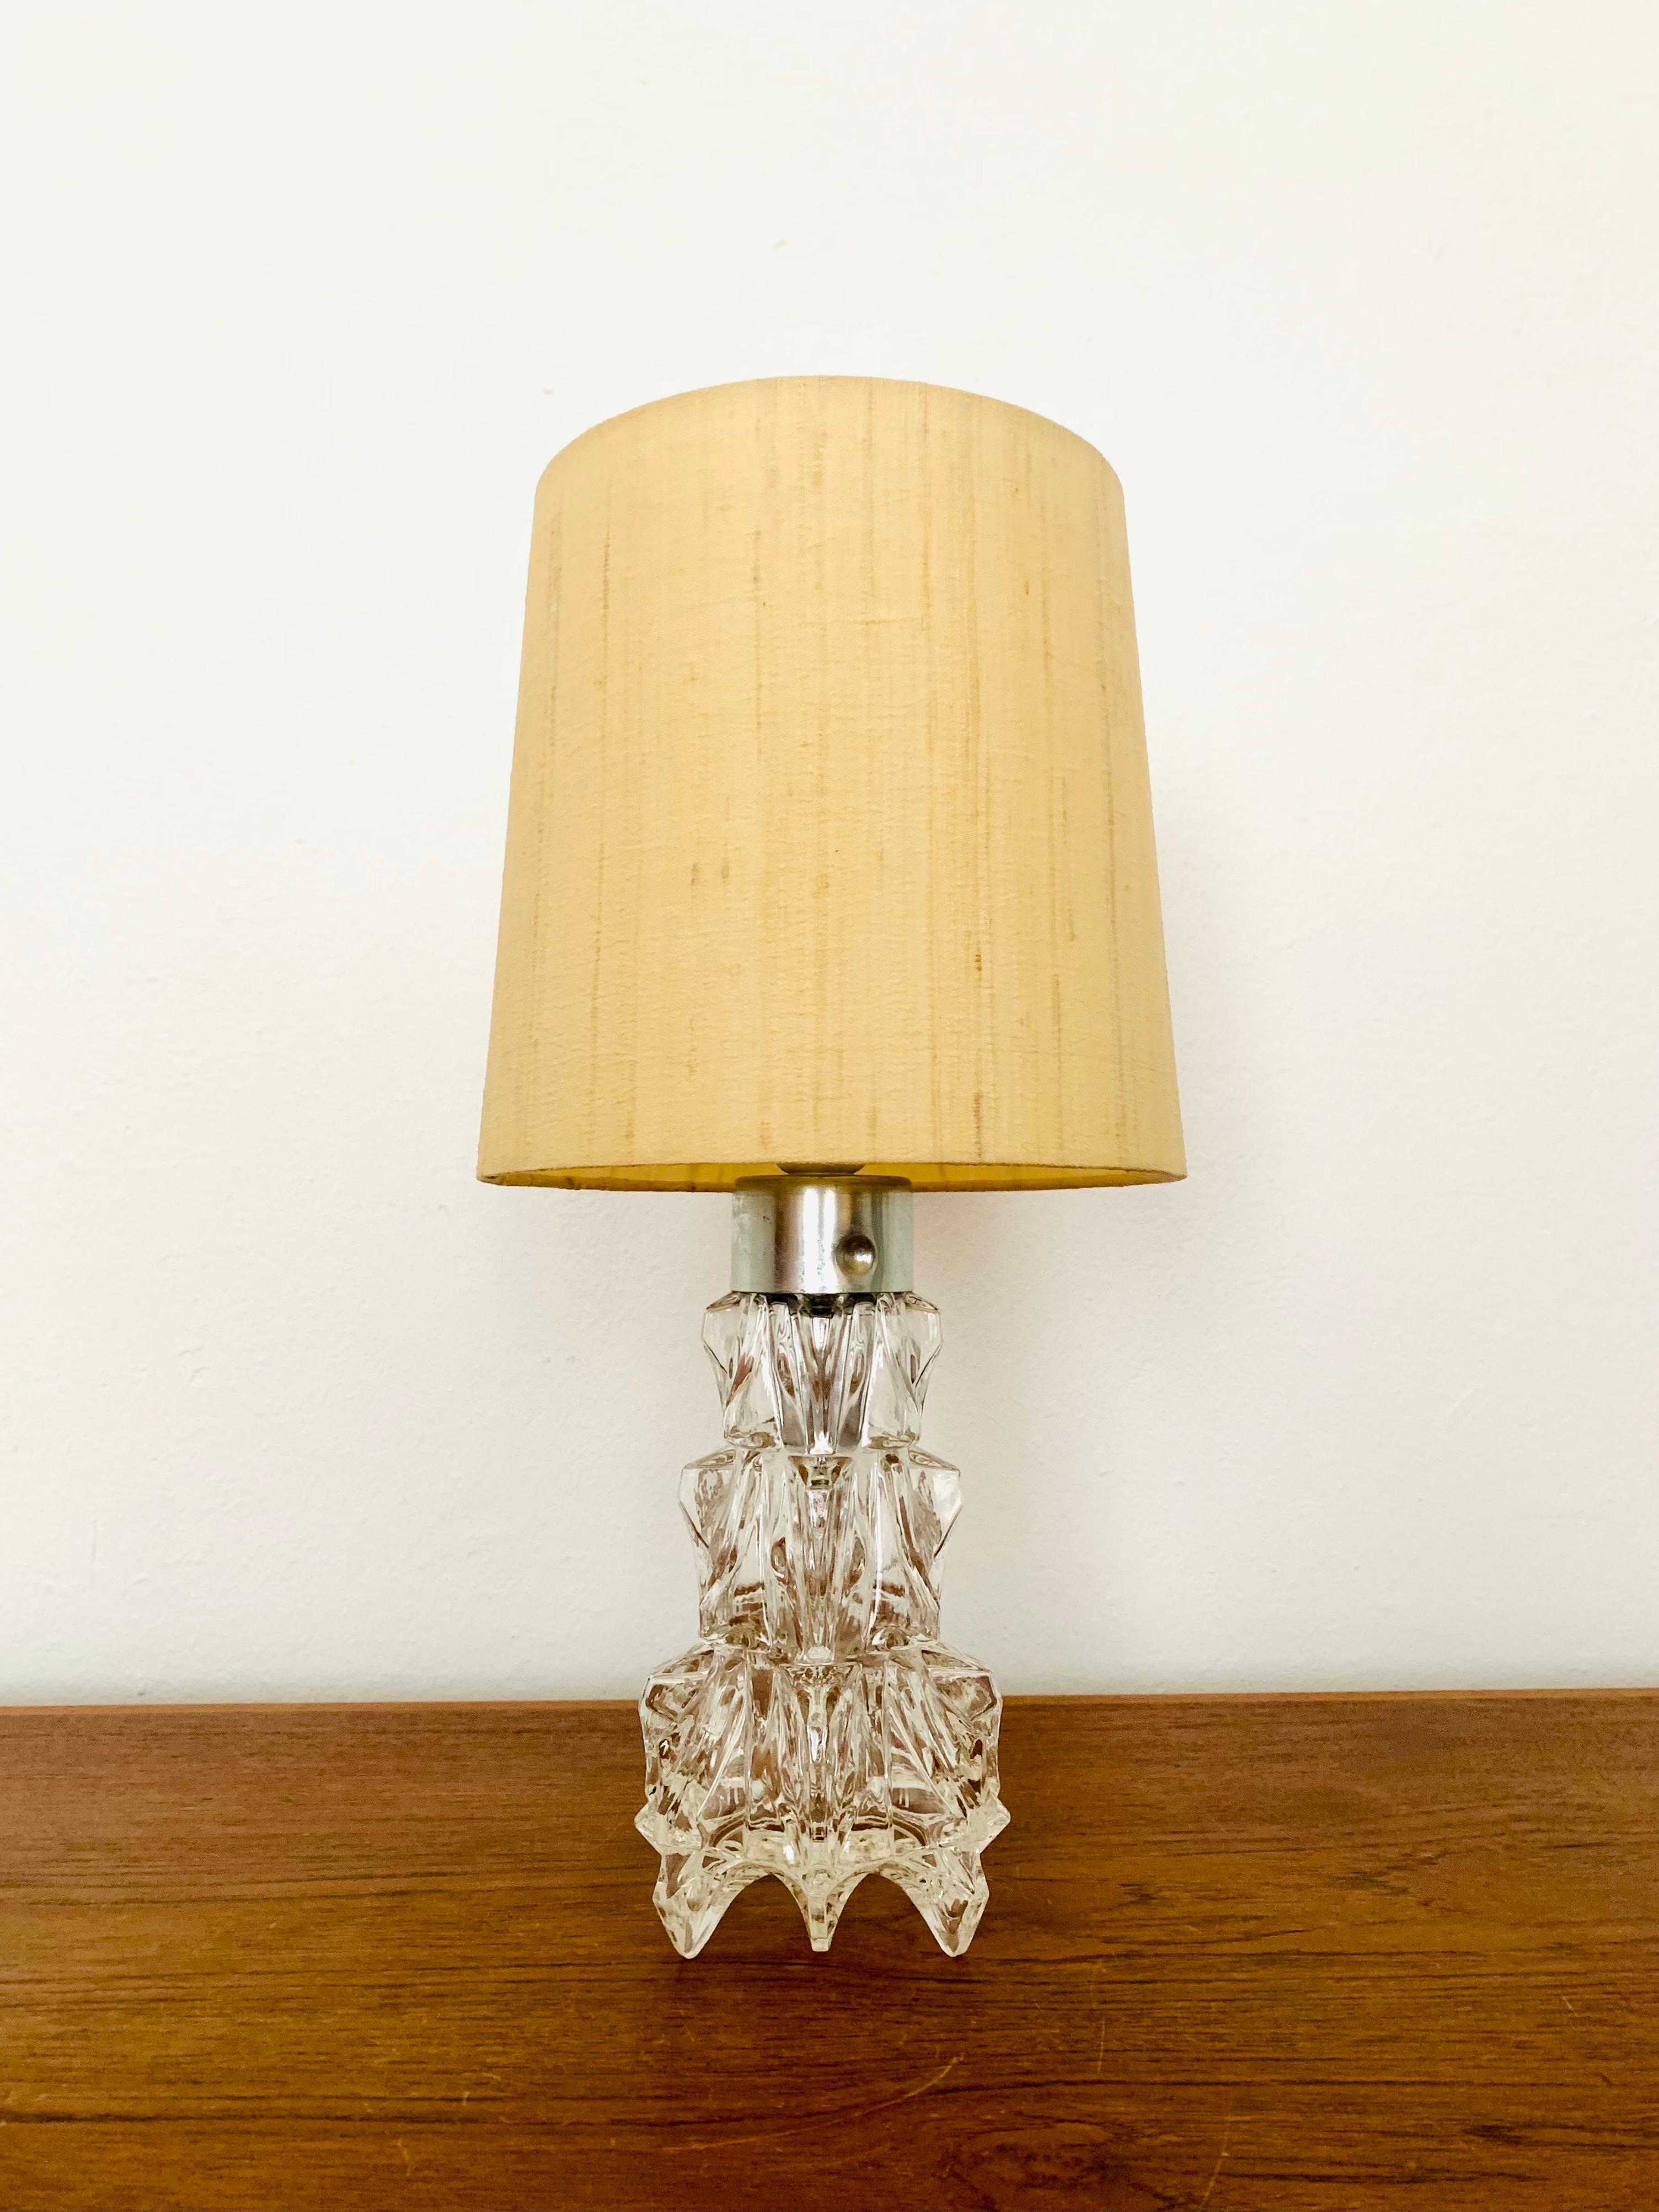 Wunderschöne Tischlampe aus Murano-Glas aus den 1960er Jahren.
Der beleuchtete Glassockel sorgt für ein eindrucksvolles, funkelndes Lichtspiel.
Sehr hohe Verarbeitungsqualität und fantastisches Design.

Bedingung:

Sehr guter Vintage-Zustand mit